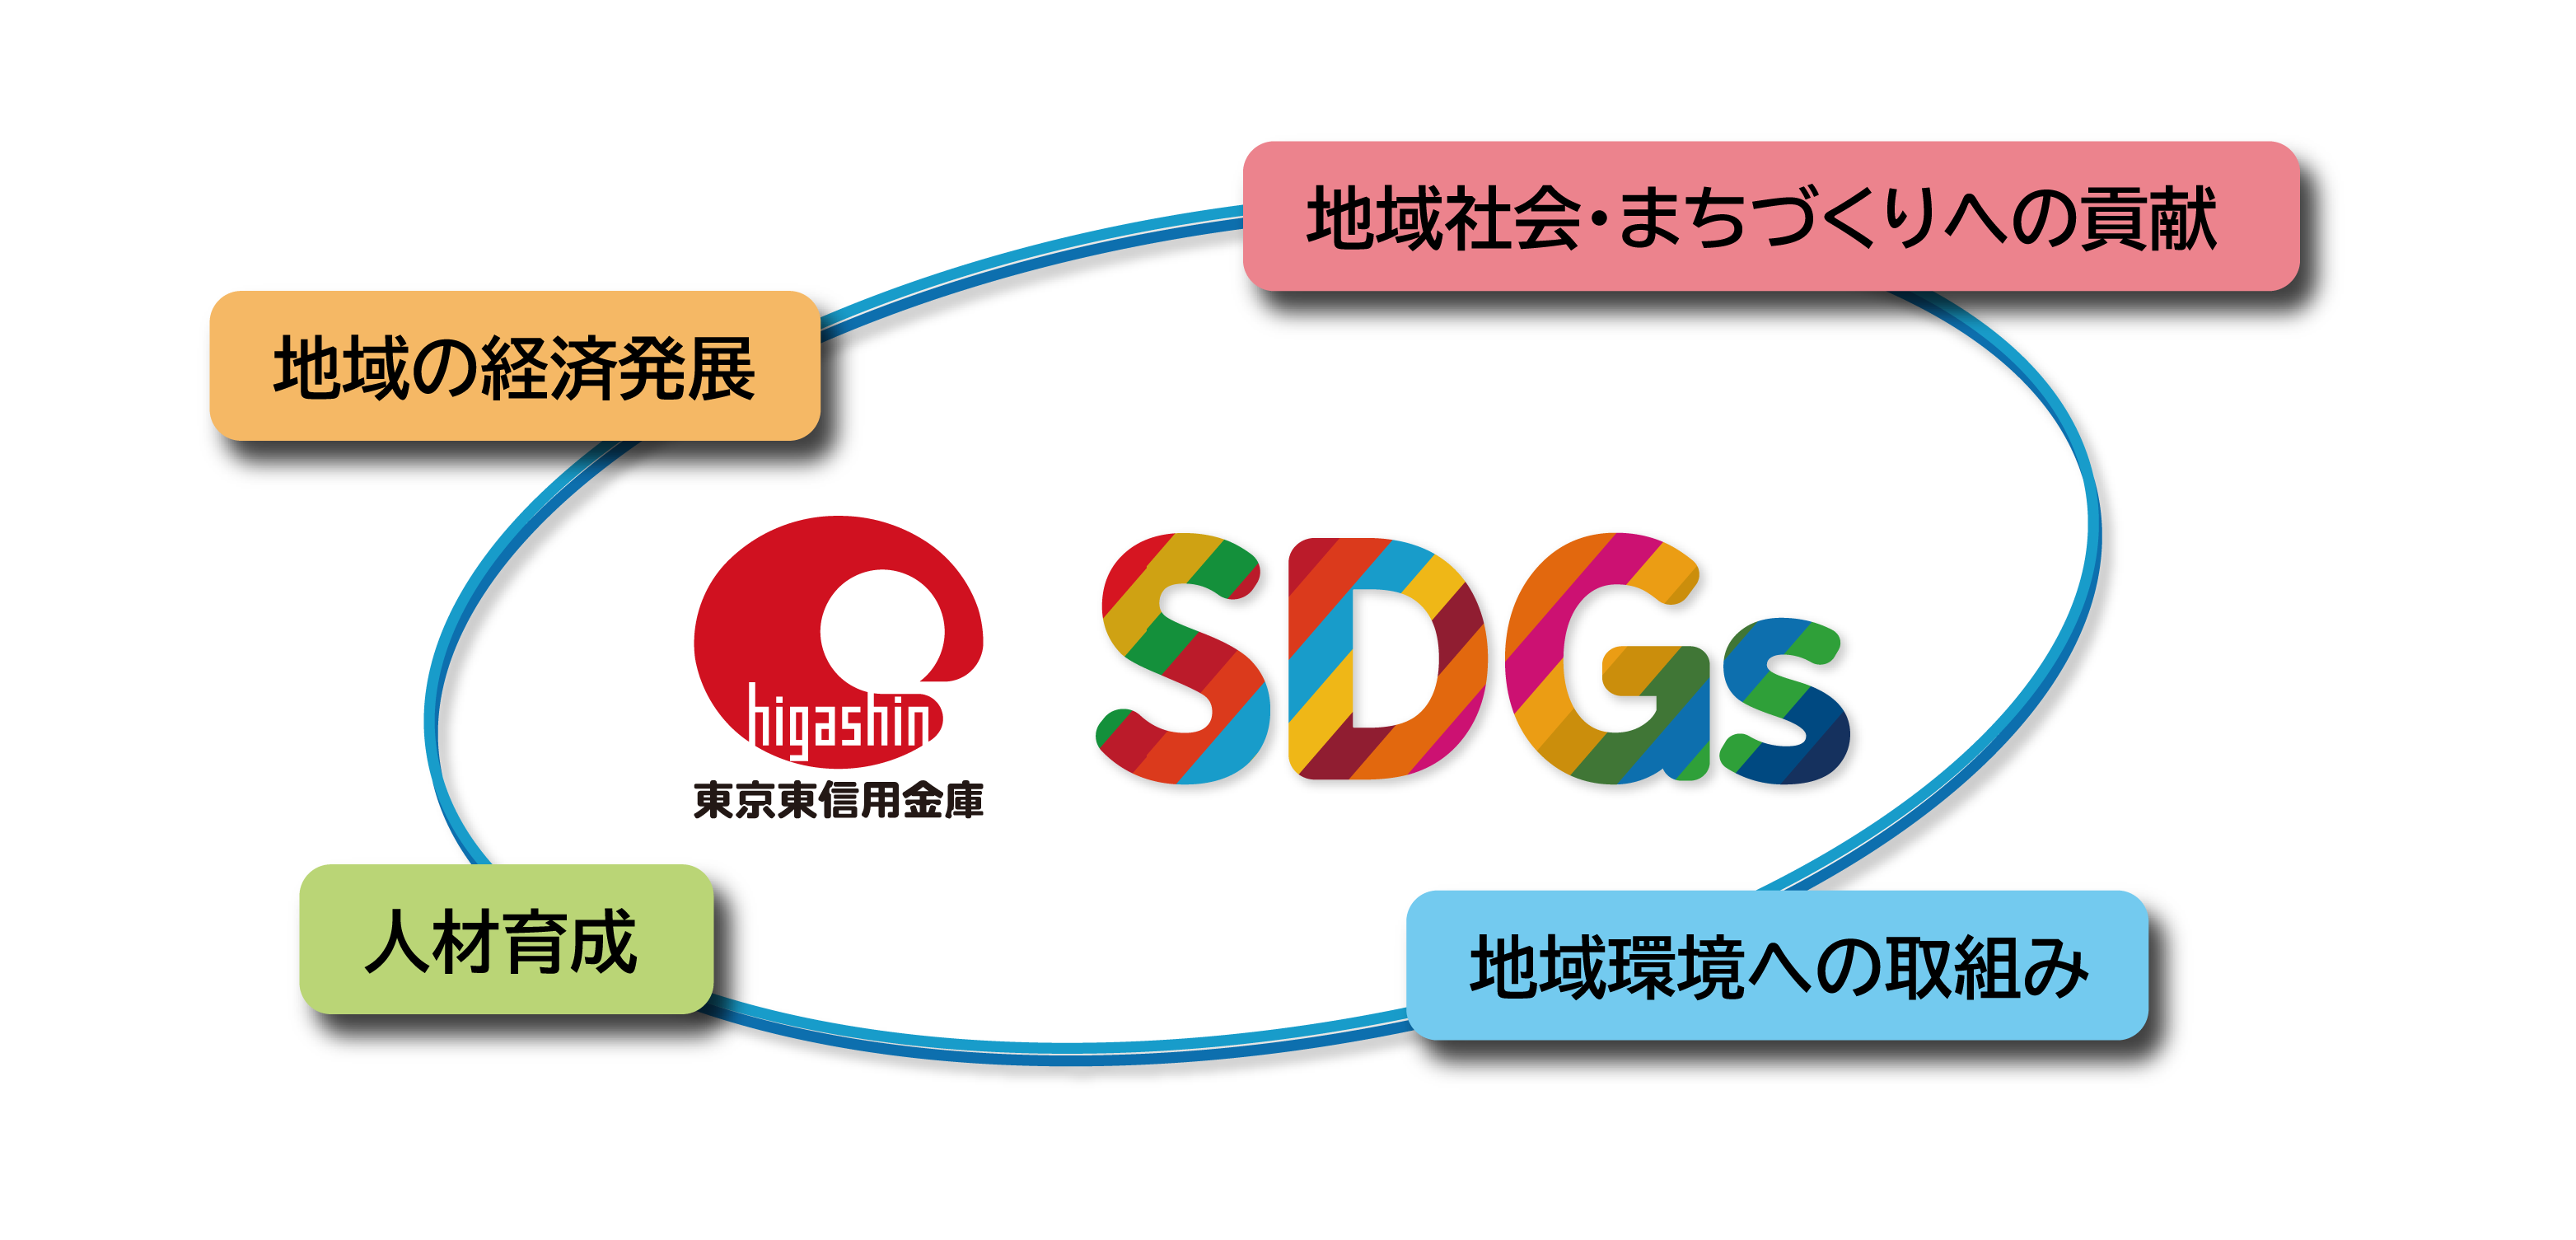 ひがしんグループSDGs宣言 地域の経済発展 地域社会・まちづくりへの貢献 人材育成 地域環境への取組み